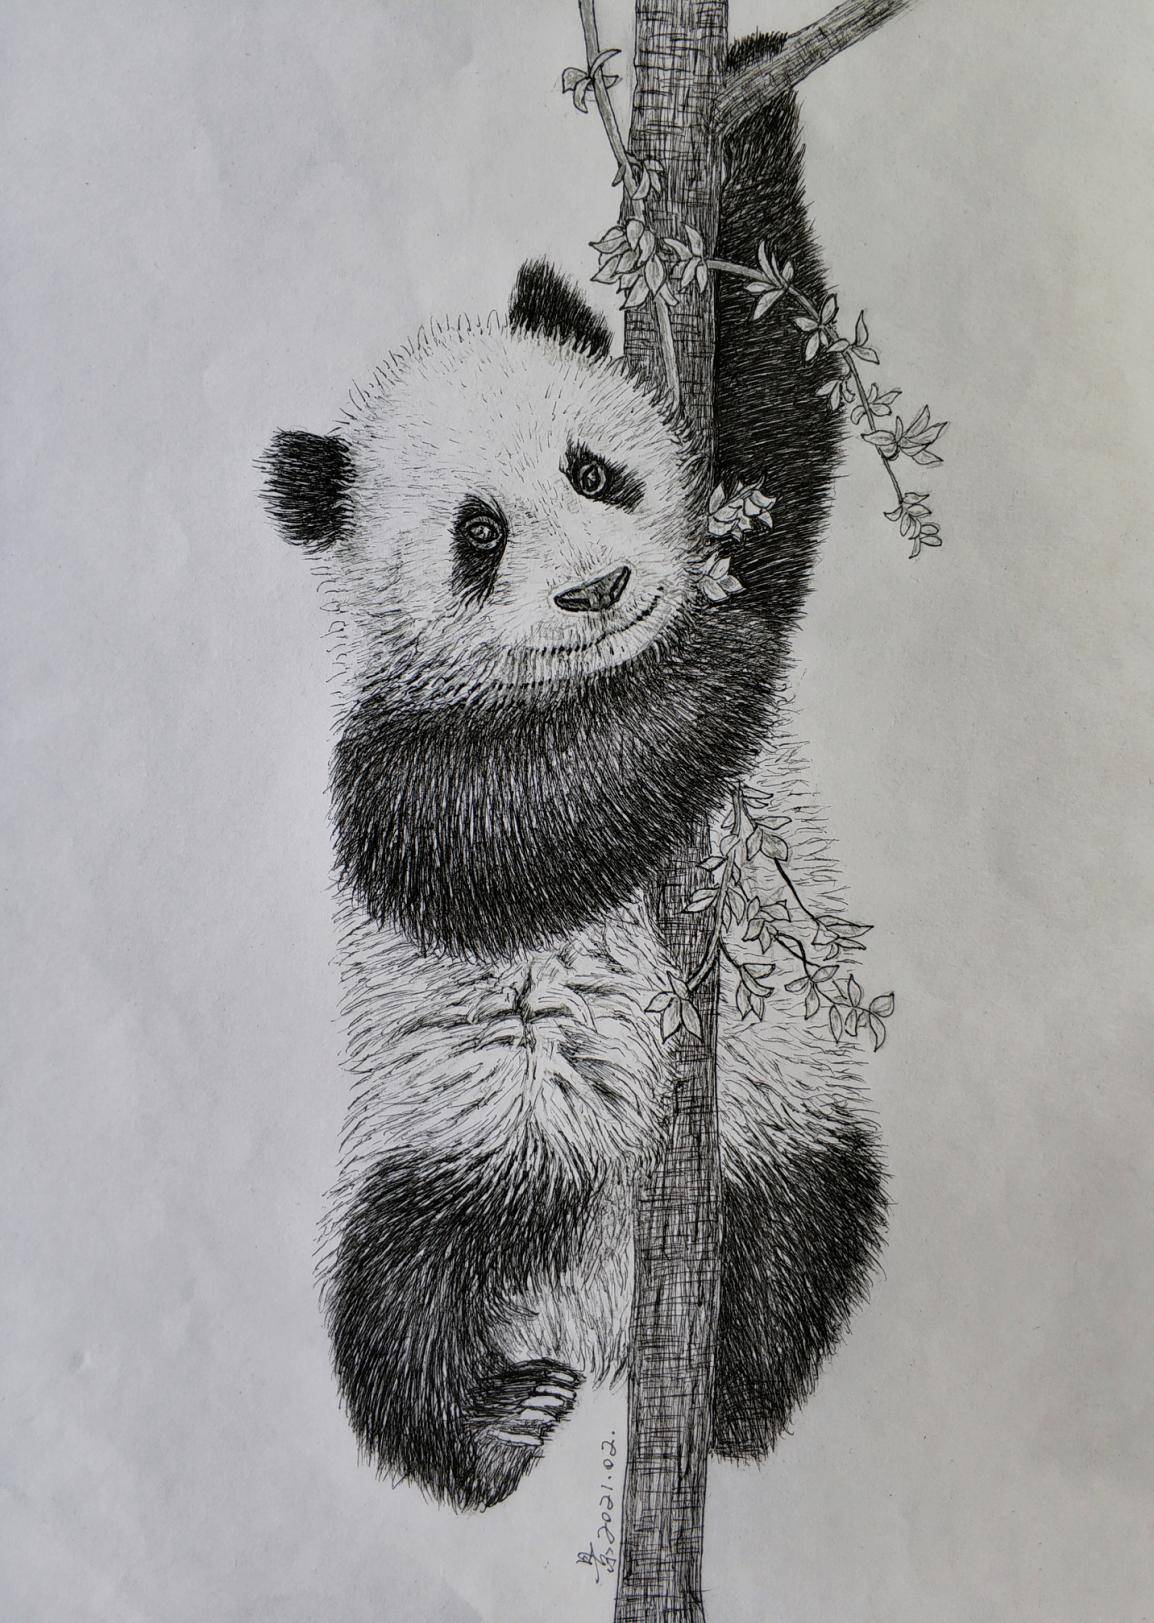 本人在绘大熊猫素描作品时,突发奇想:大熊猫黑白相间的皮毛,正好可